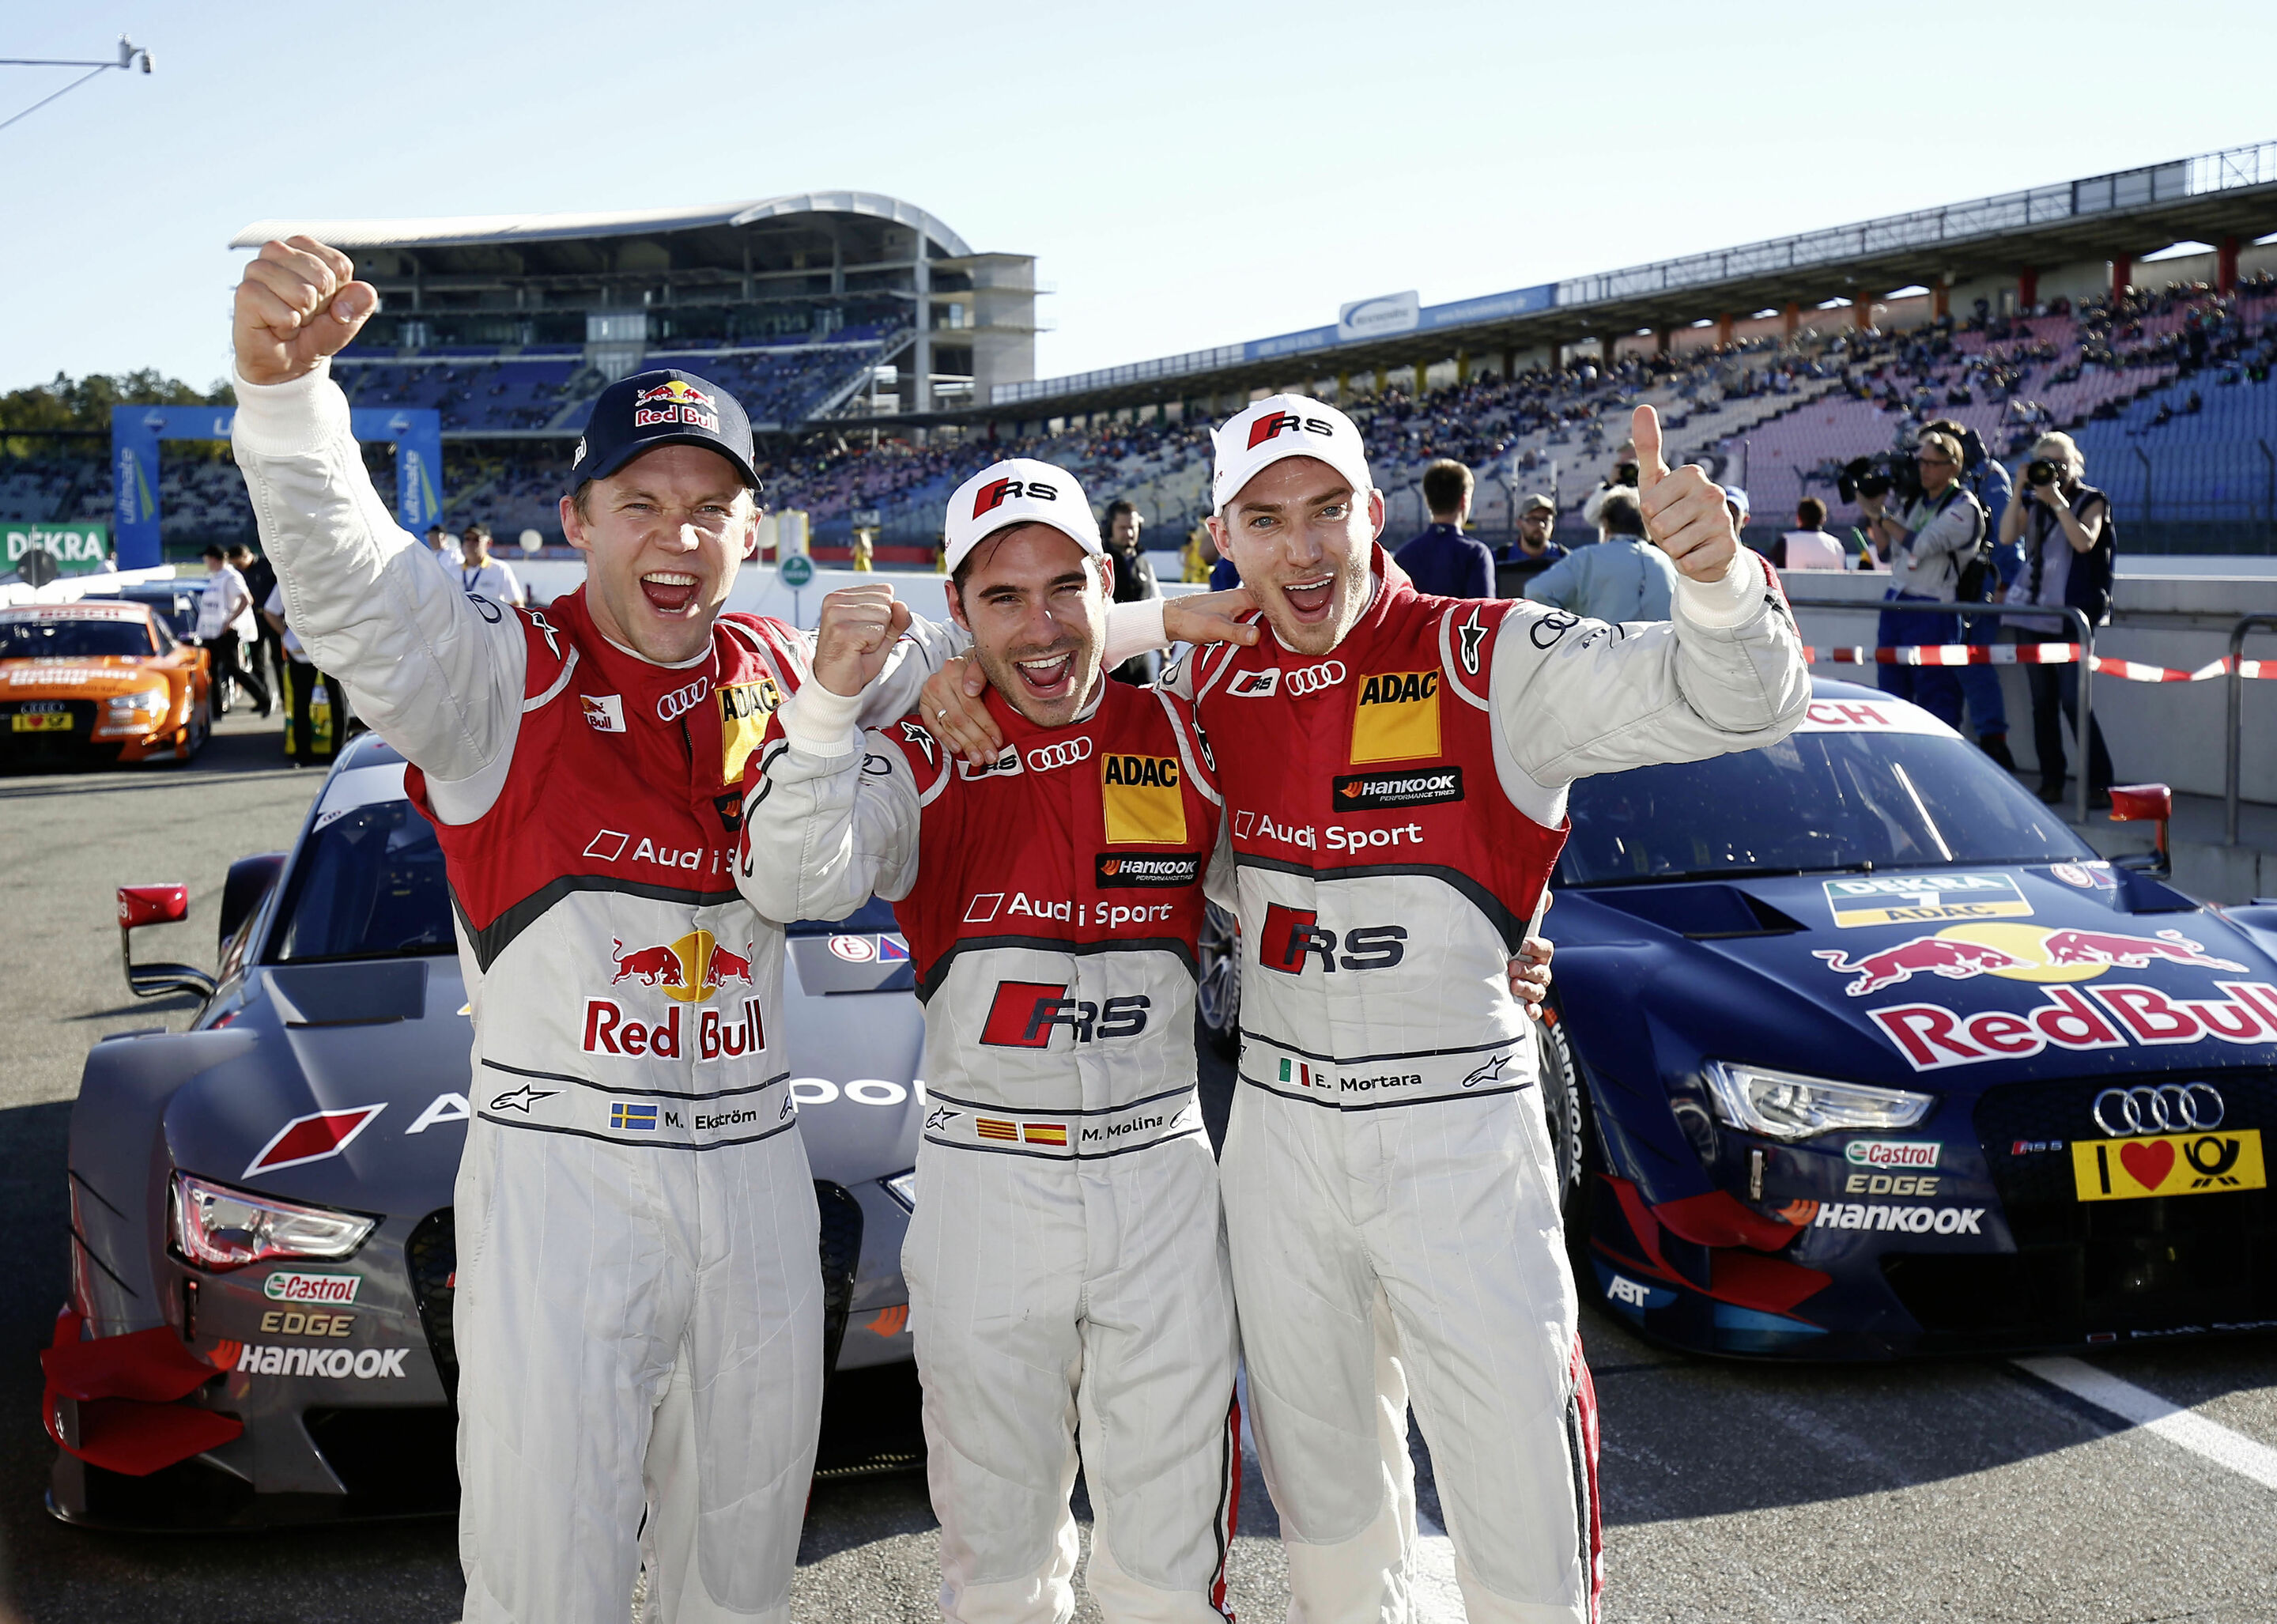 Starker Audi-Auftritt beim DTM-Finale